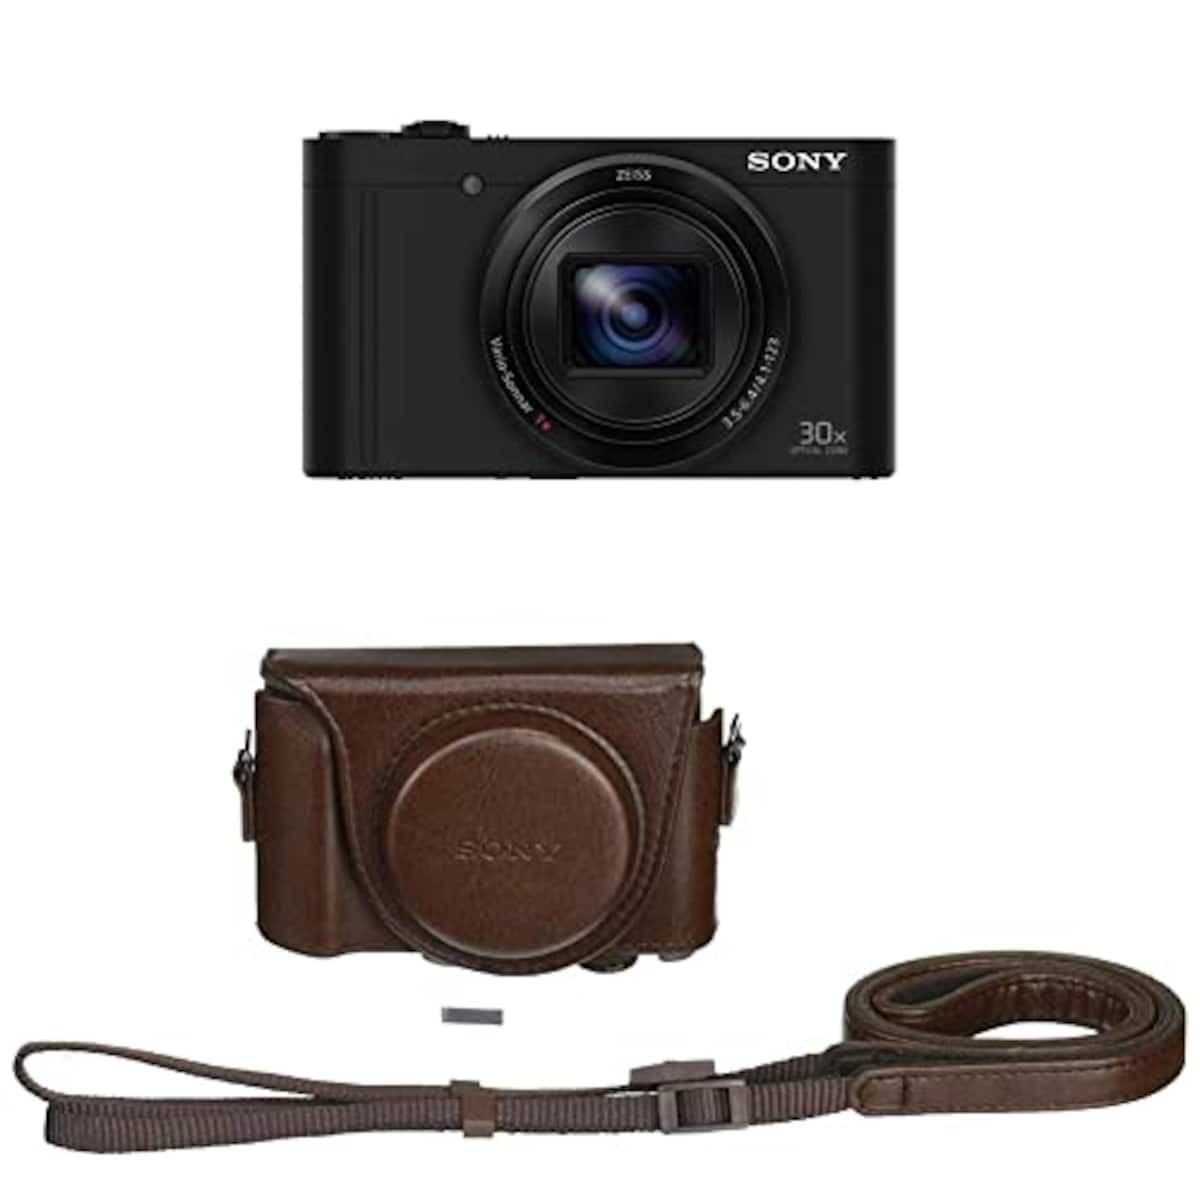 【WX500 と ジャケットケース セット】 大切なカメラをキズや汚れからガードしたい方に。DSC-WX500 ブラック + LCJ-HWA